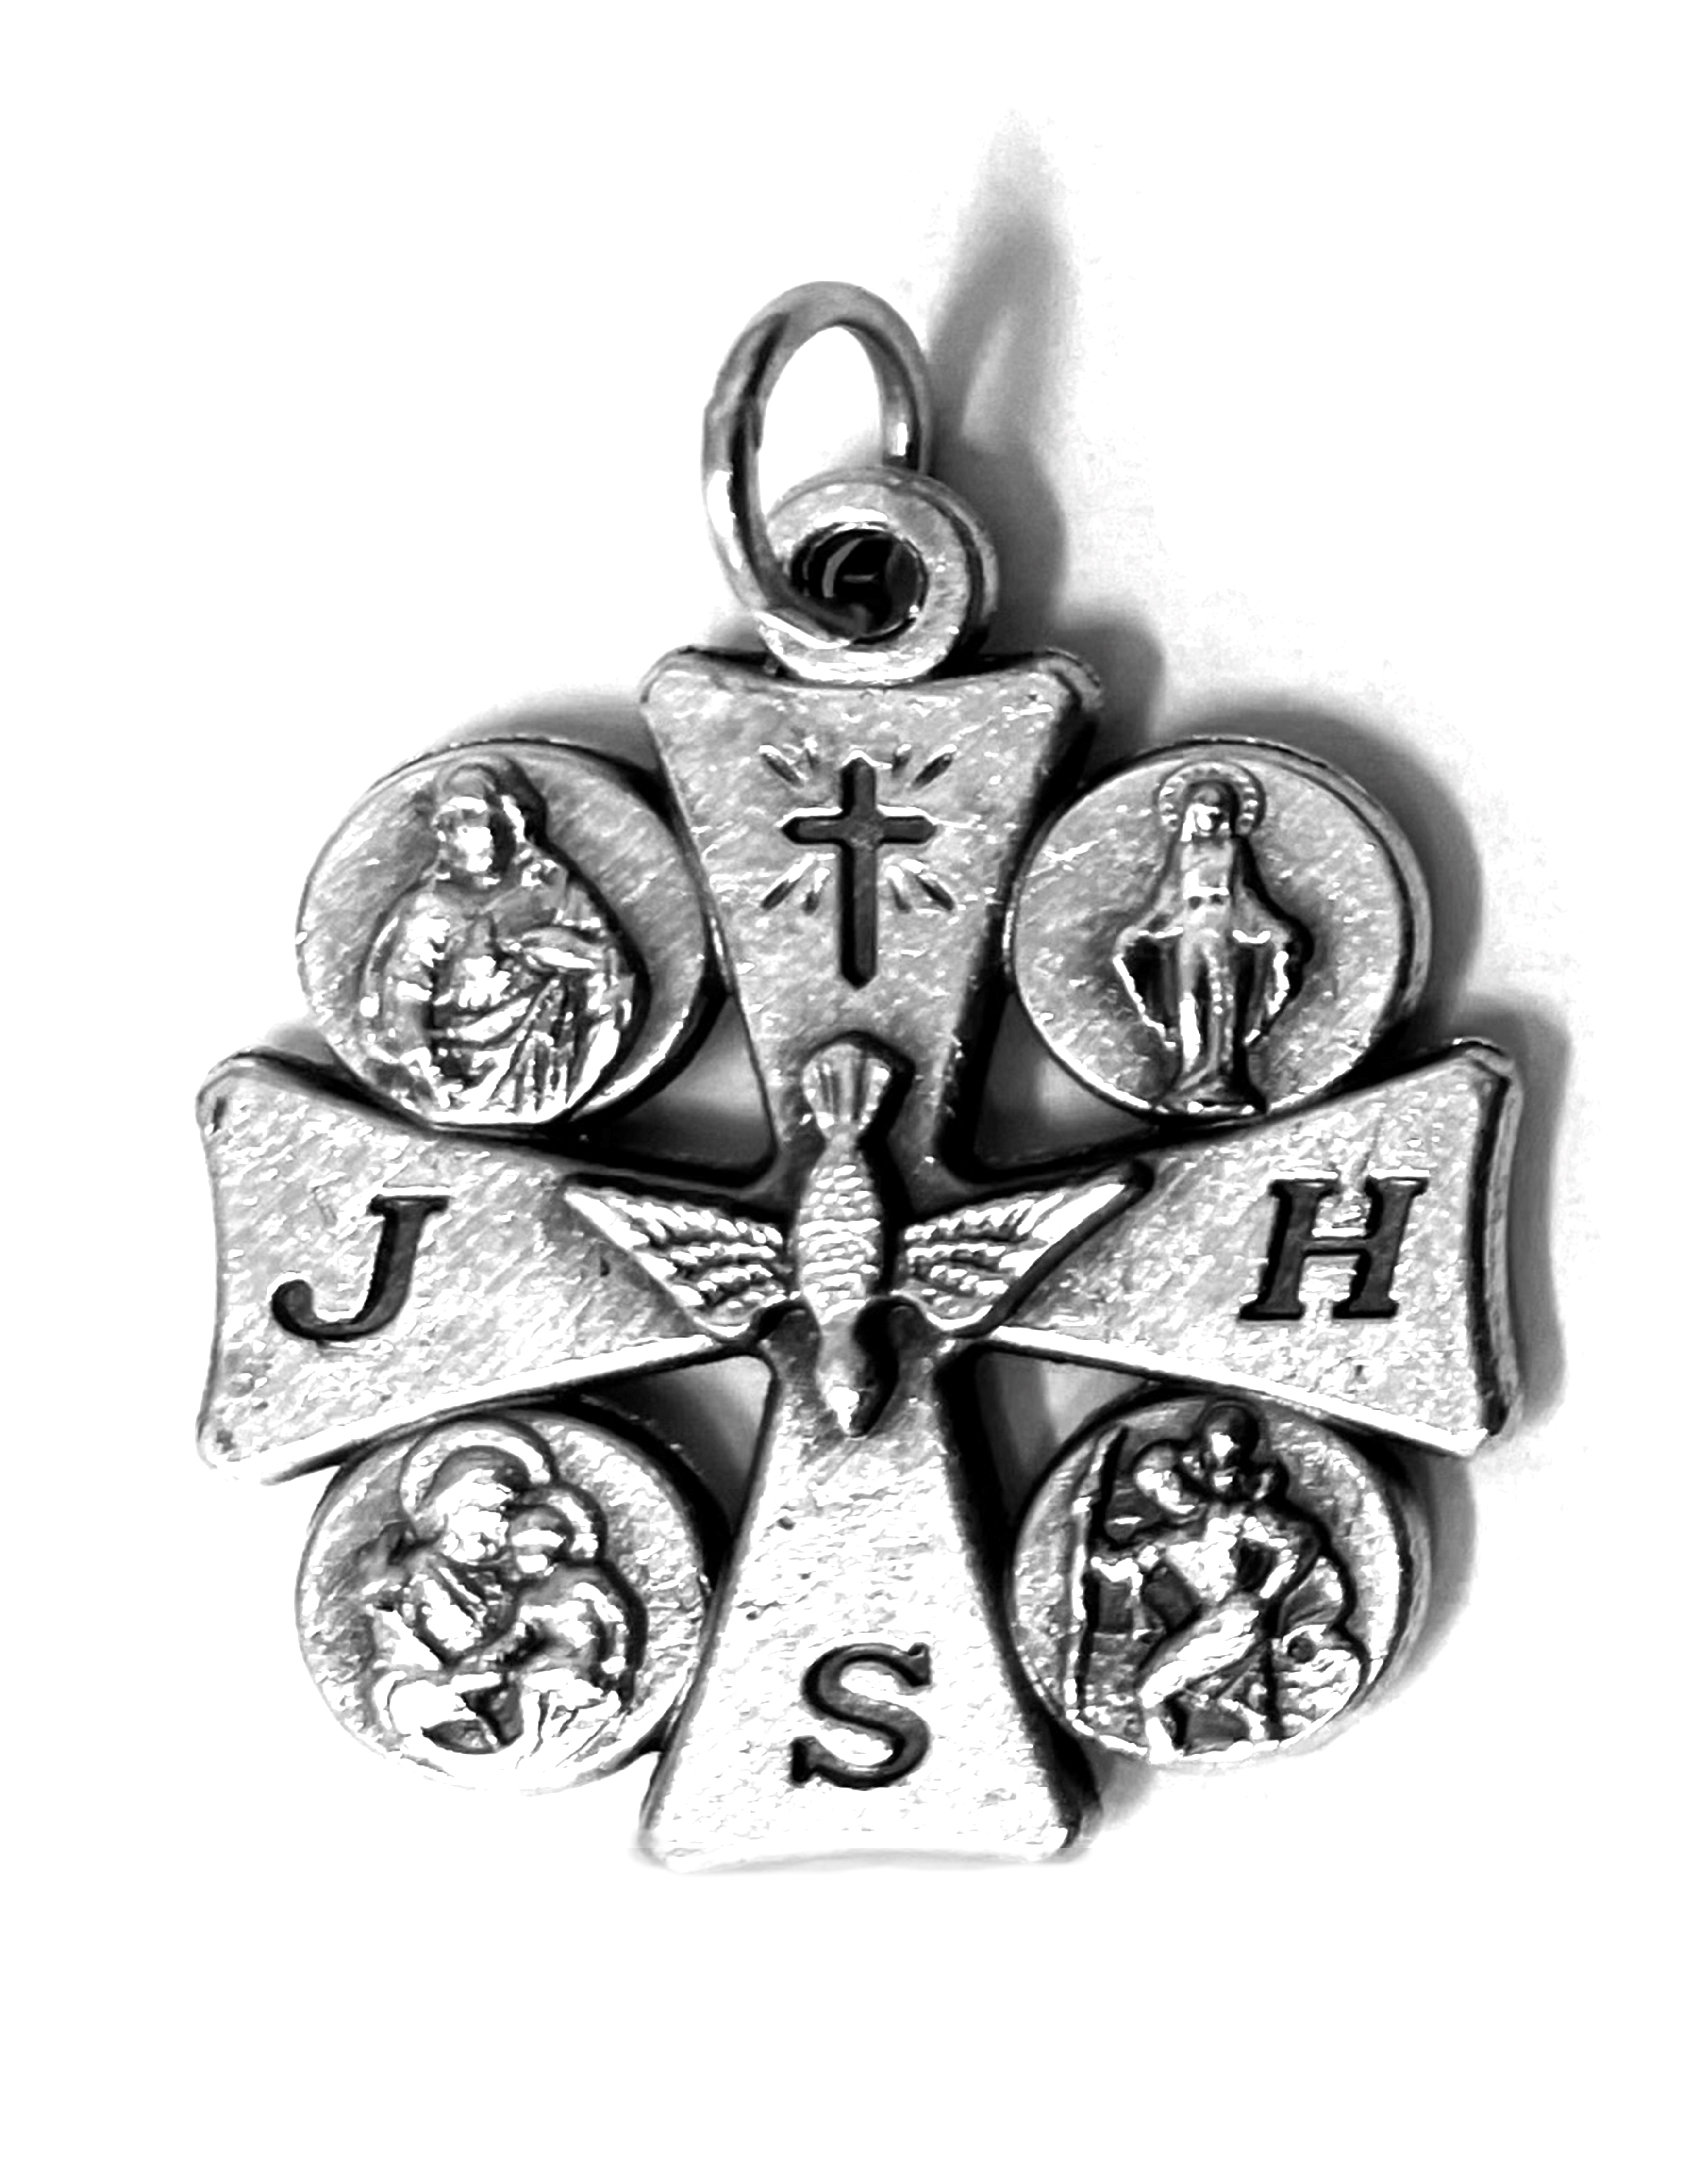 Five-Way JHS Cross Medal 1.0"